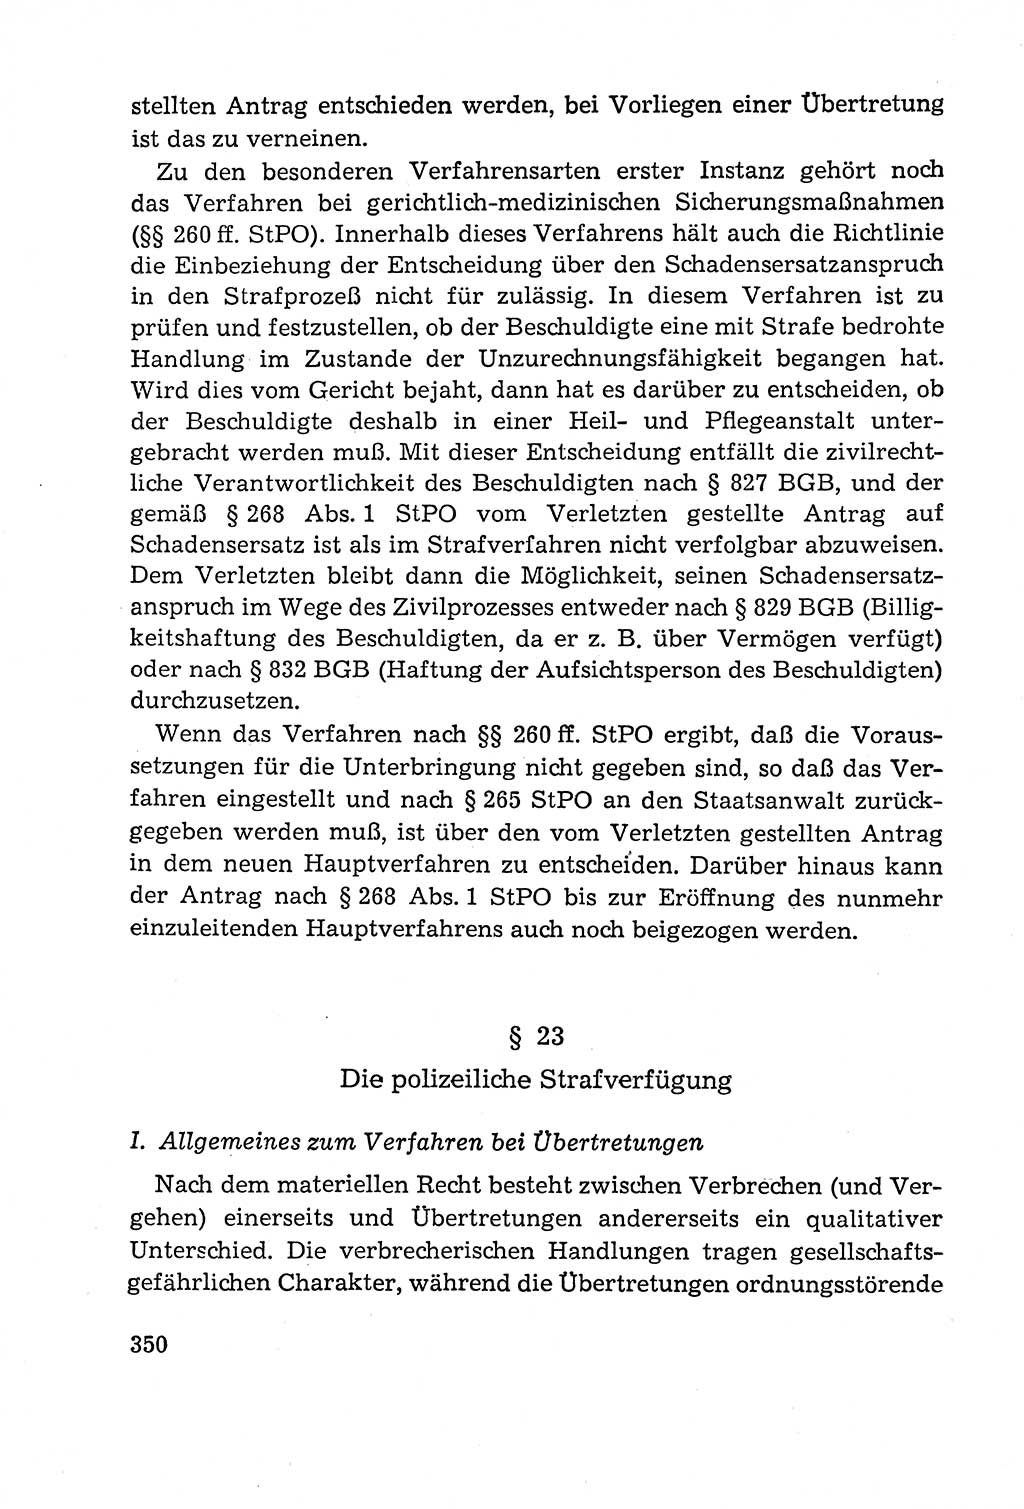 Leitfaden des Strafprozeßrechts der Deutschen Demokratischen Republik (DDR) 1959, Seite 350 (LF StPR DDR 1959, S. 350)